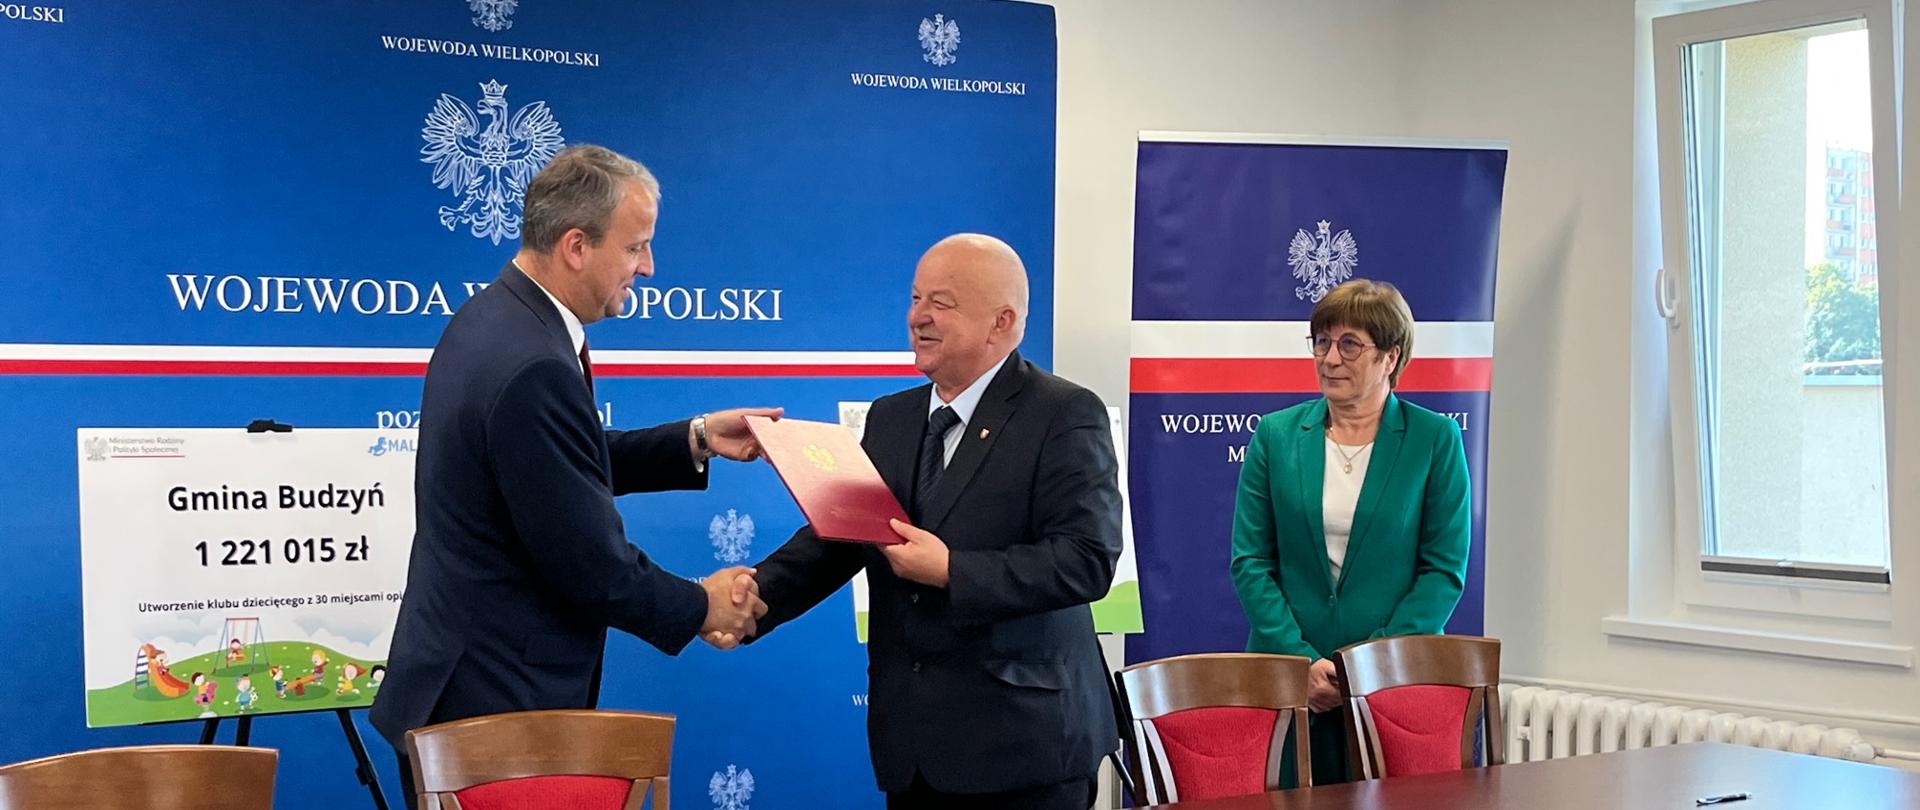 Wojewoda Wielkopolski i Burmistrz miasta i Gminy Budzyń przekazują sobie podpisaną umowę